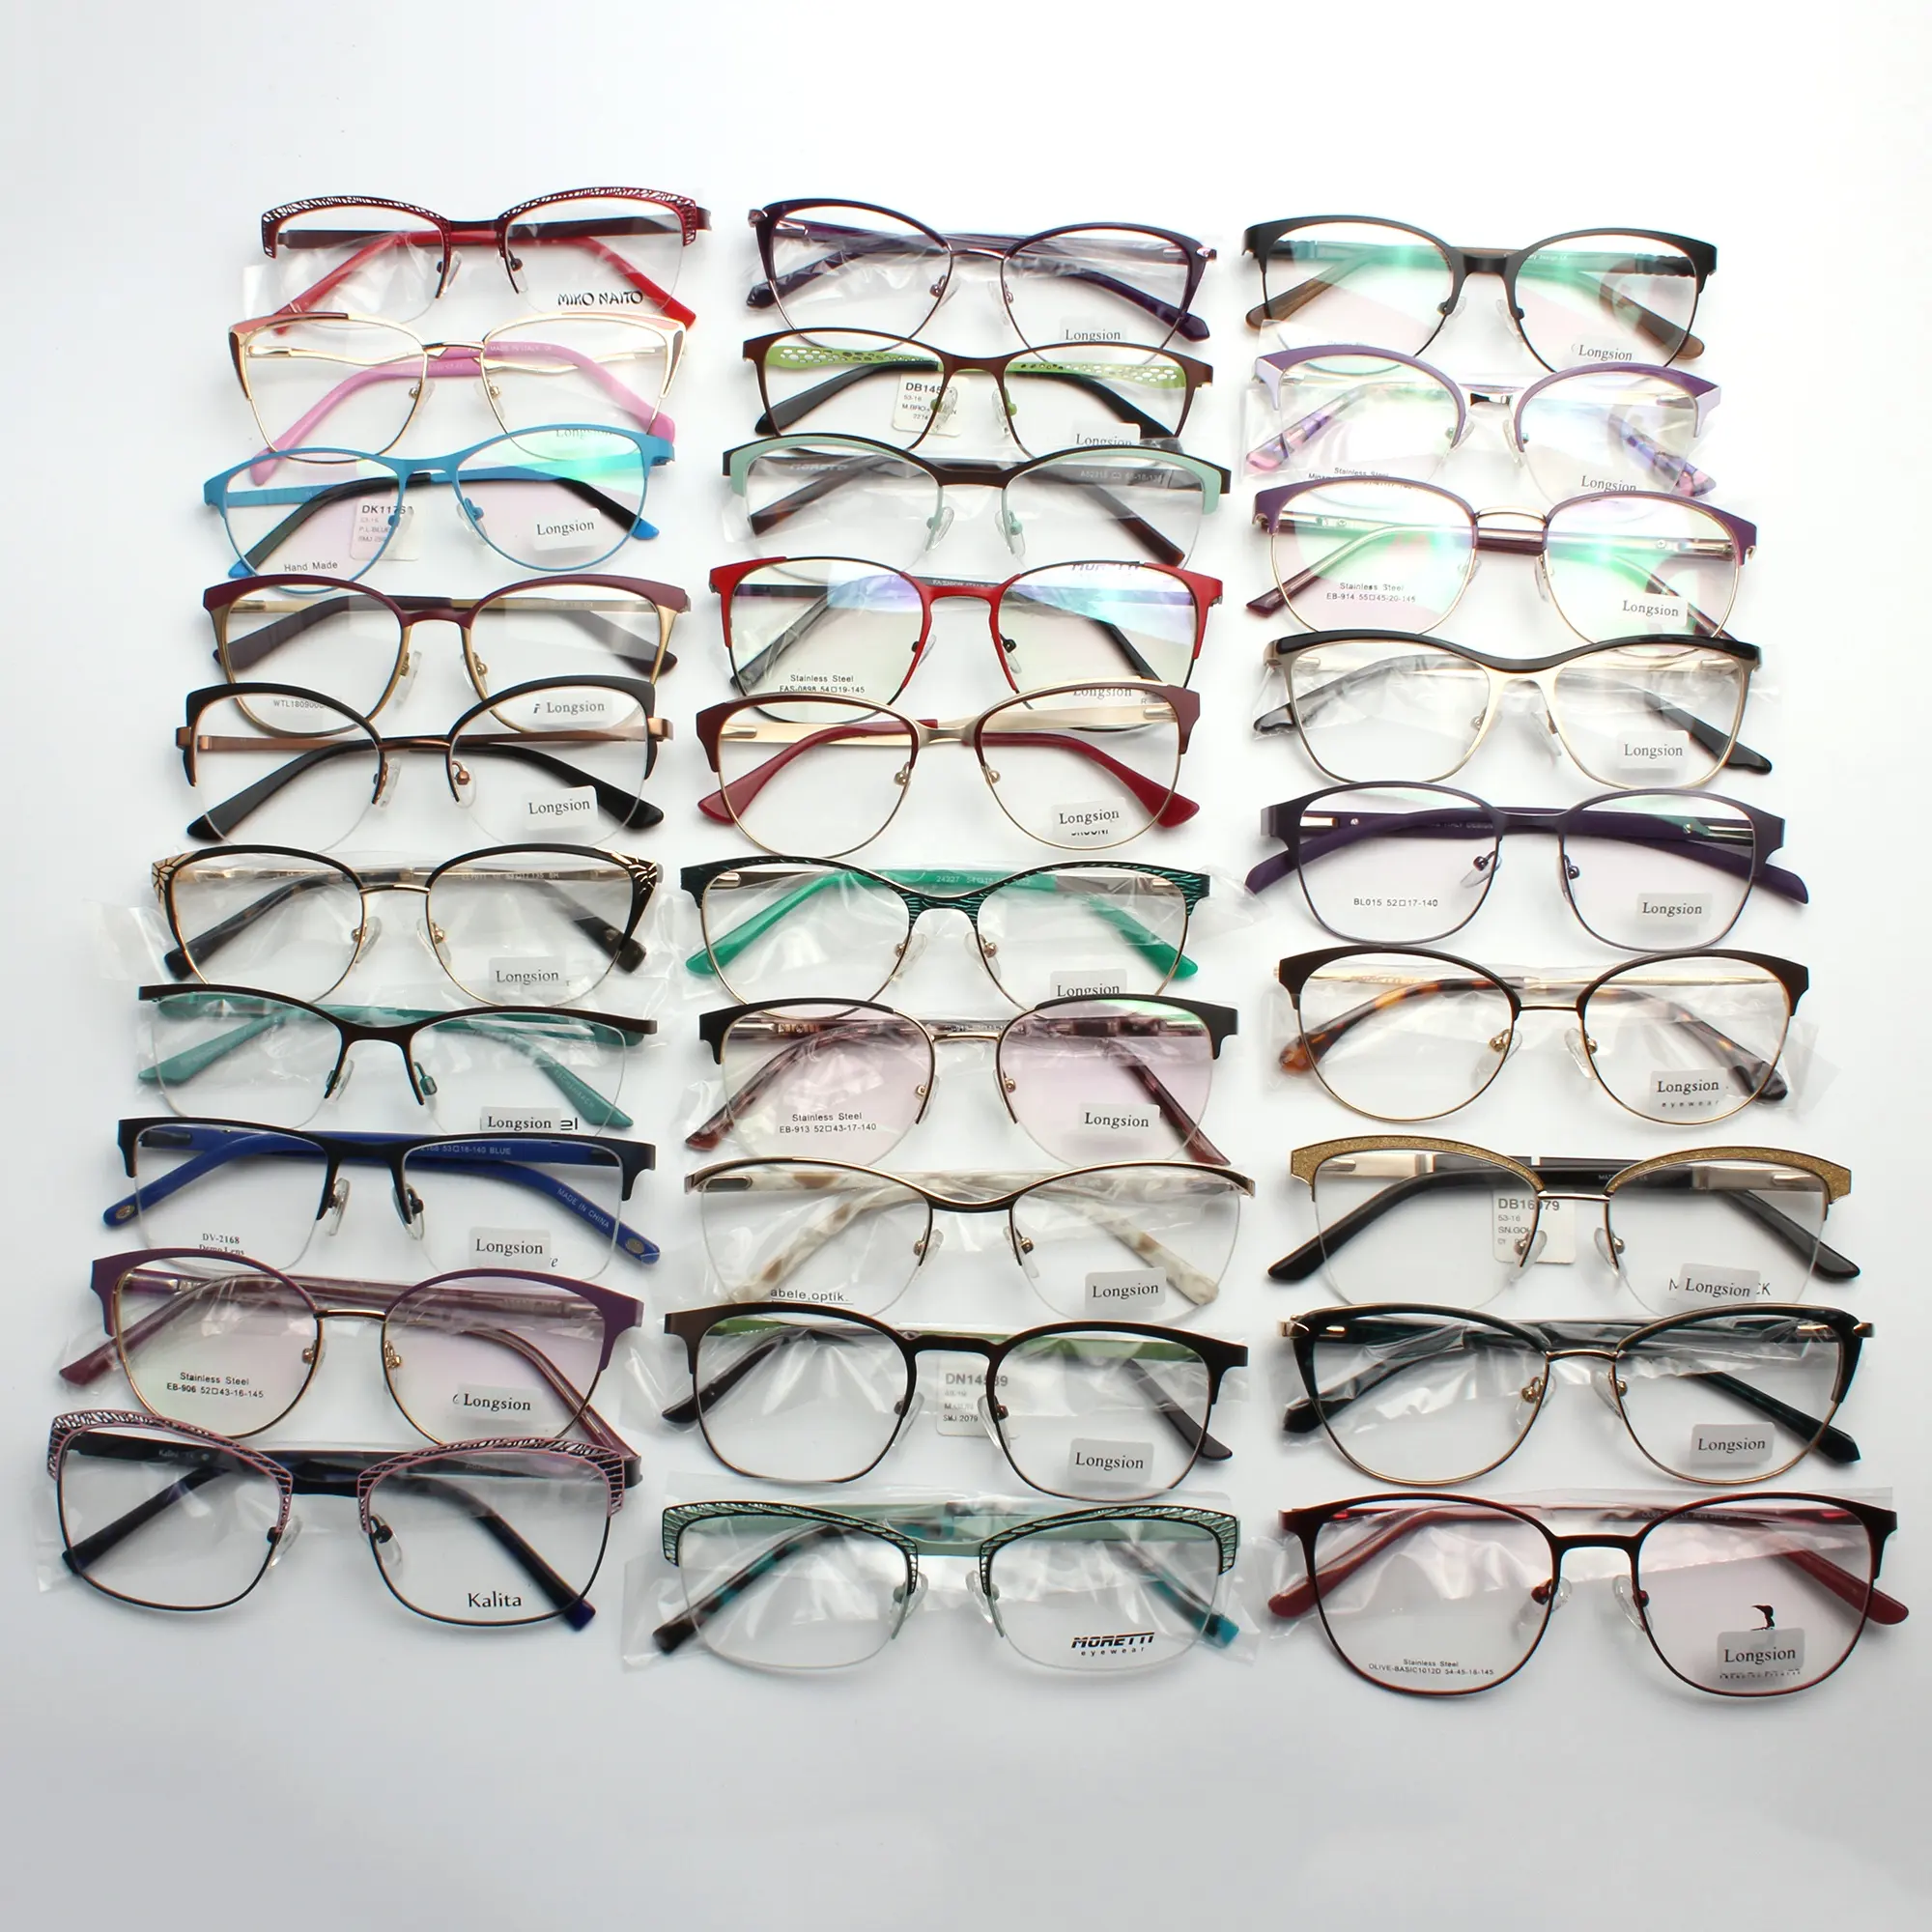 رخيصة الثمن متنوعة النظارات إطار اطارات معدنية للنظارات الأسهم جاهزة البصرية نظارات مصمم النظارات إطارات نظارات طبية لمتجر